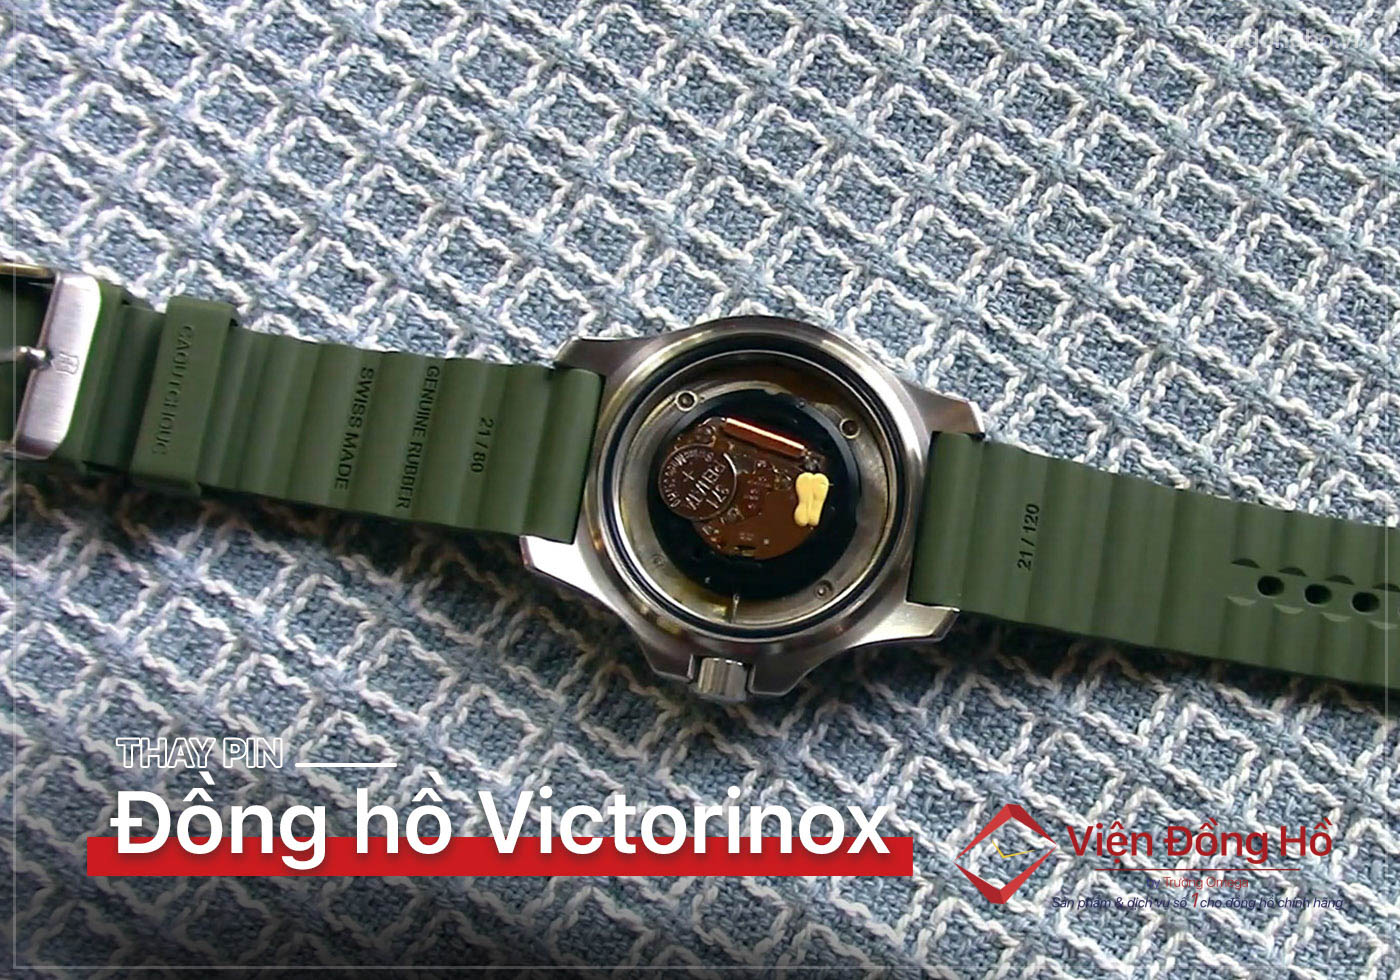 Thay pin dong ho Victorinox 5